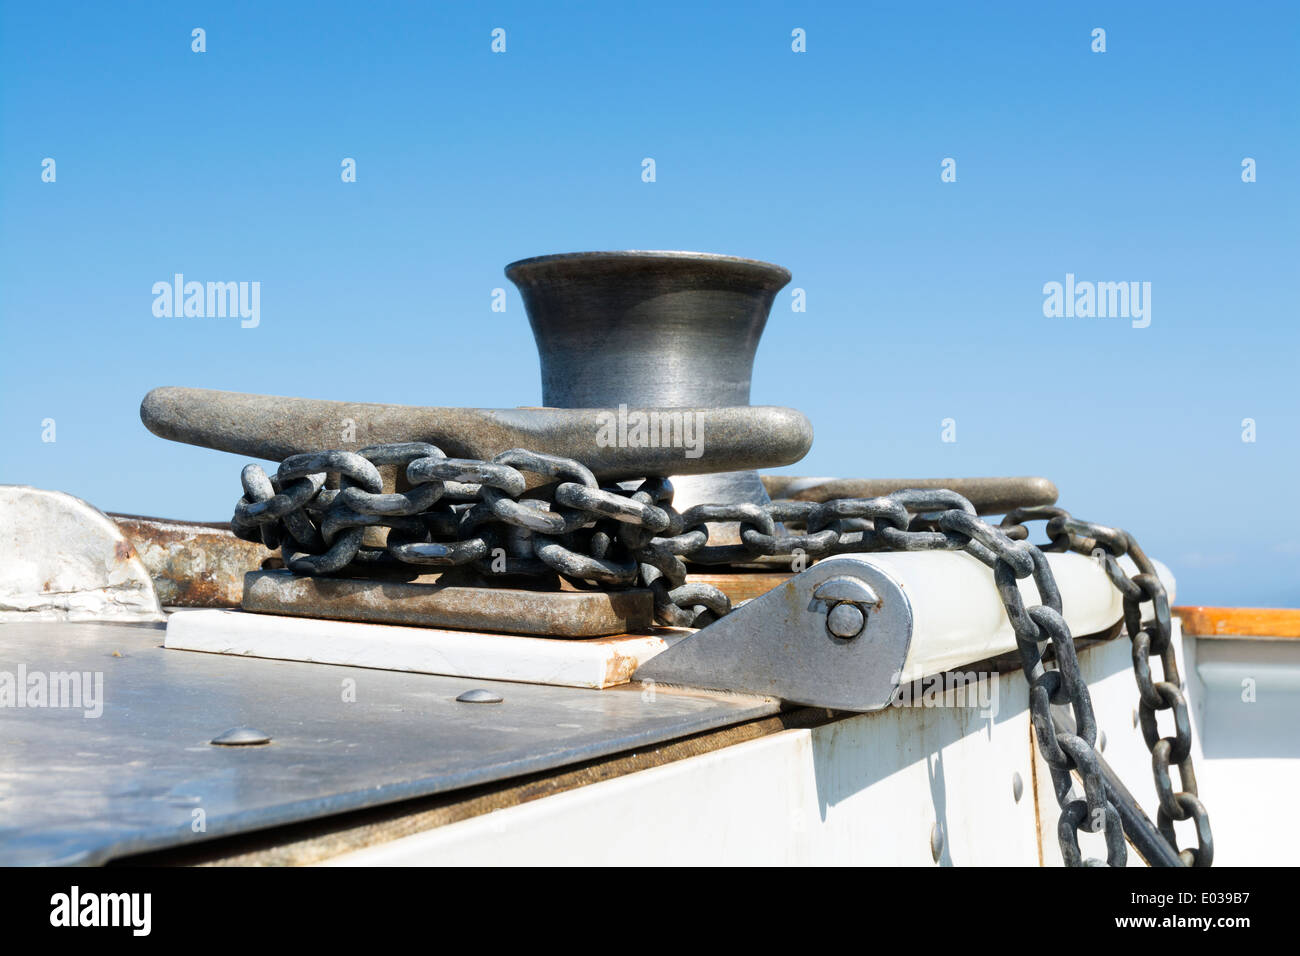 Une chaîne d'ancrage des bateaux est enroulé et fixé autour d'un taquet en acier comme les moteurs de bateau sur l'océan. Banque D'Images